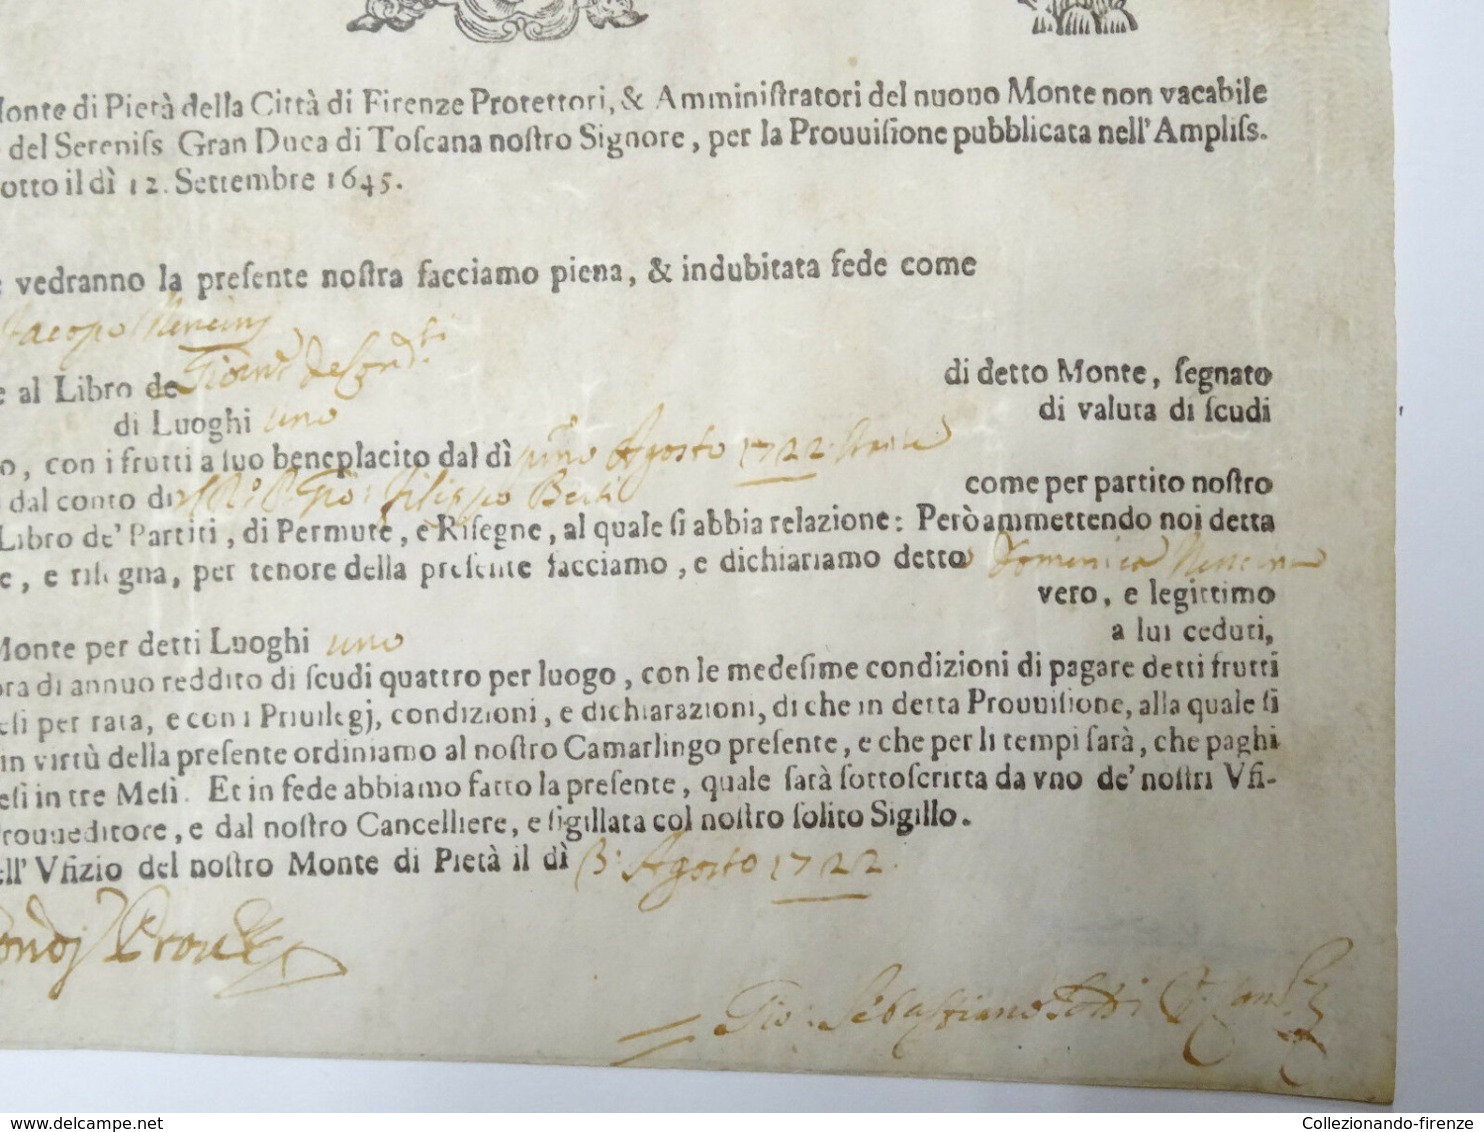 Certificato di credito nominativo di Luoghi 1 da Scudi 100 ciascuno, Firenze Agosto 1722